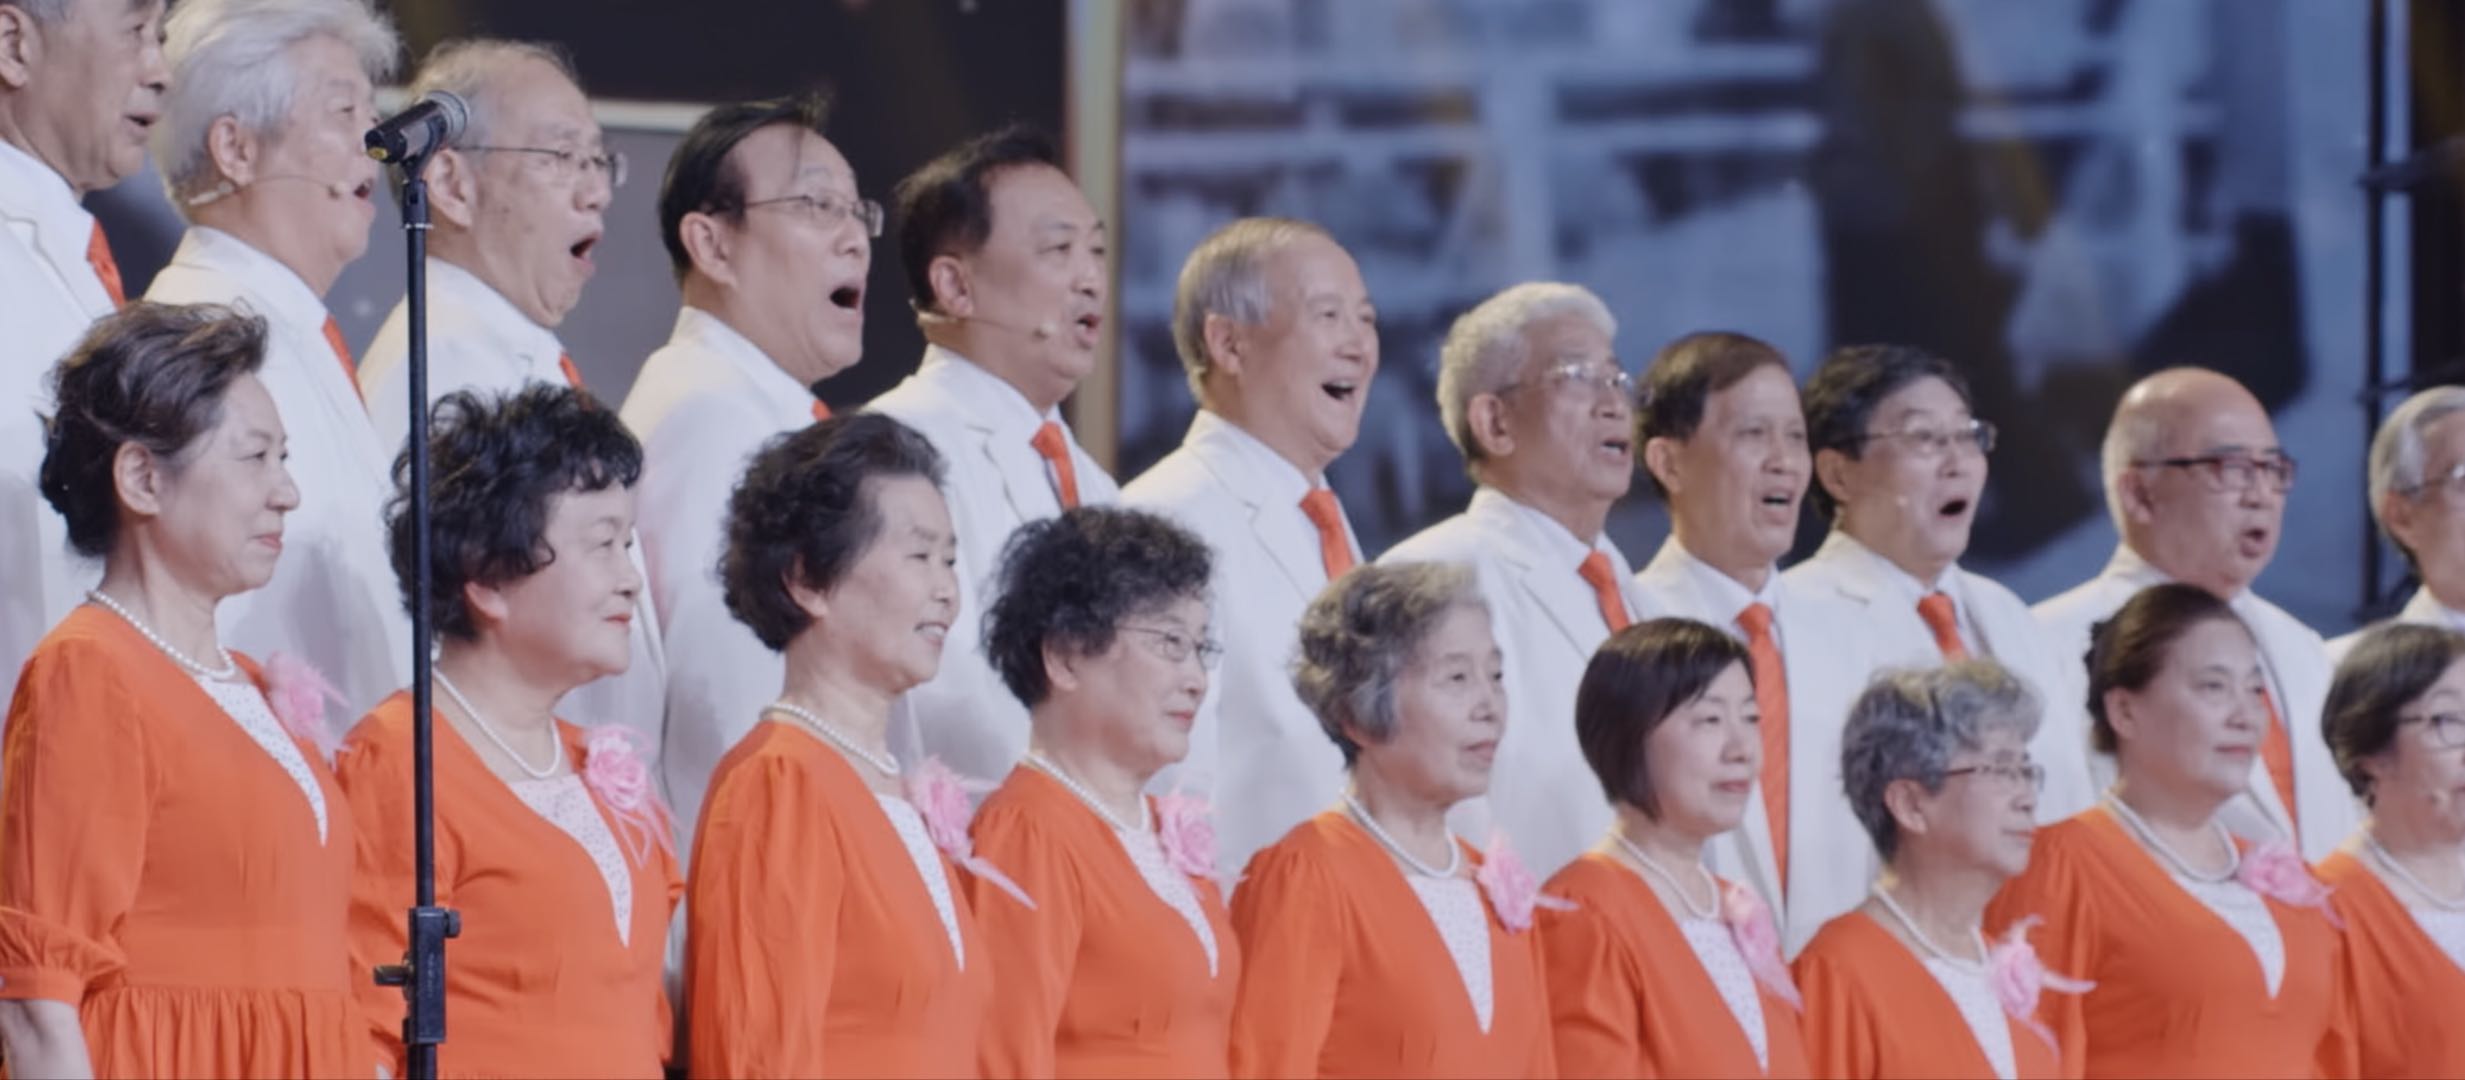 三集共150分钟,以清华大学上海校友会成立合唱团为背景,展现了一群